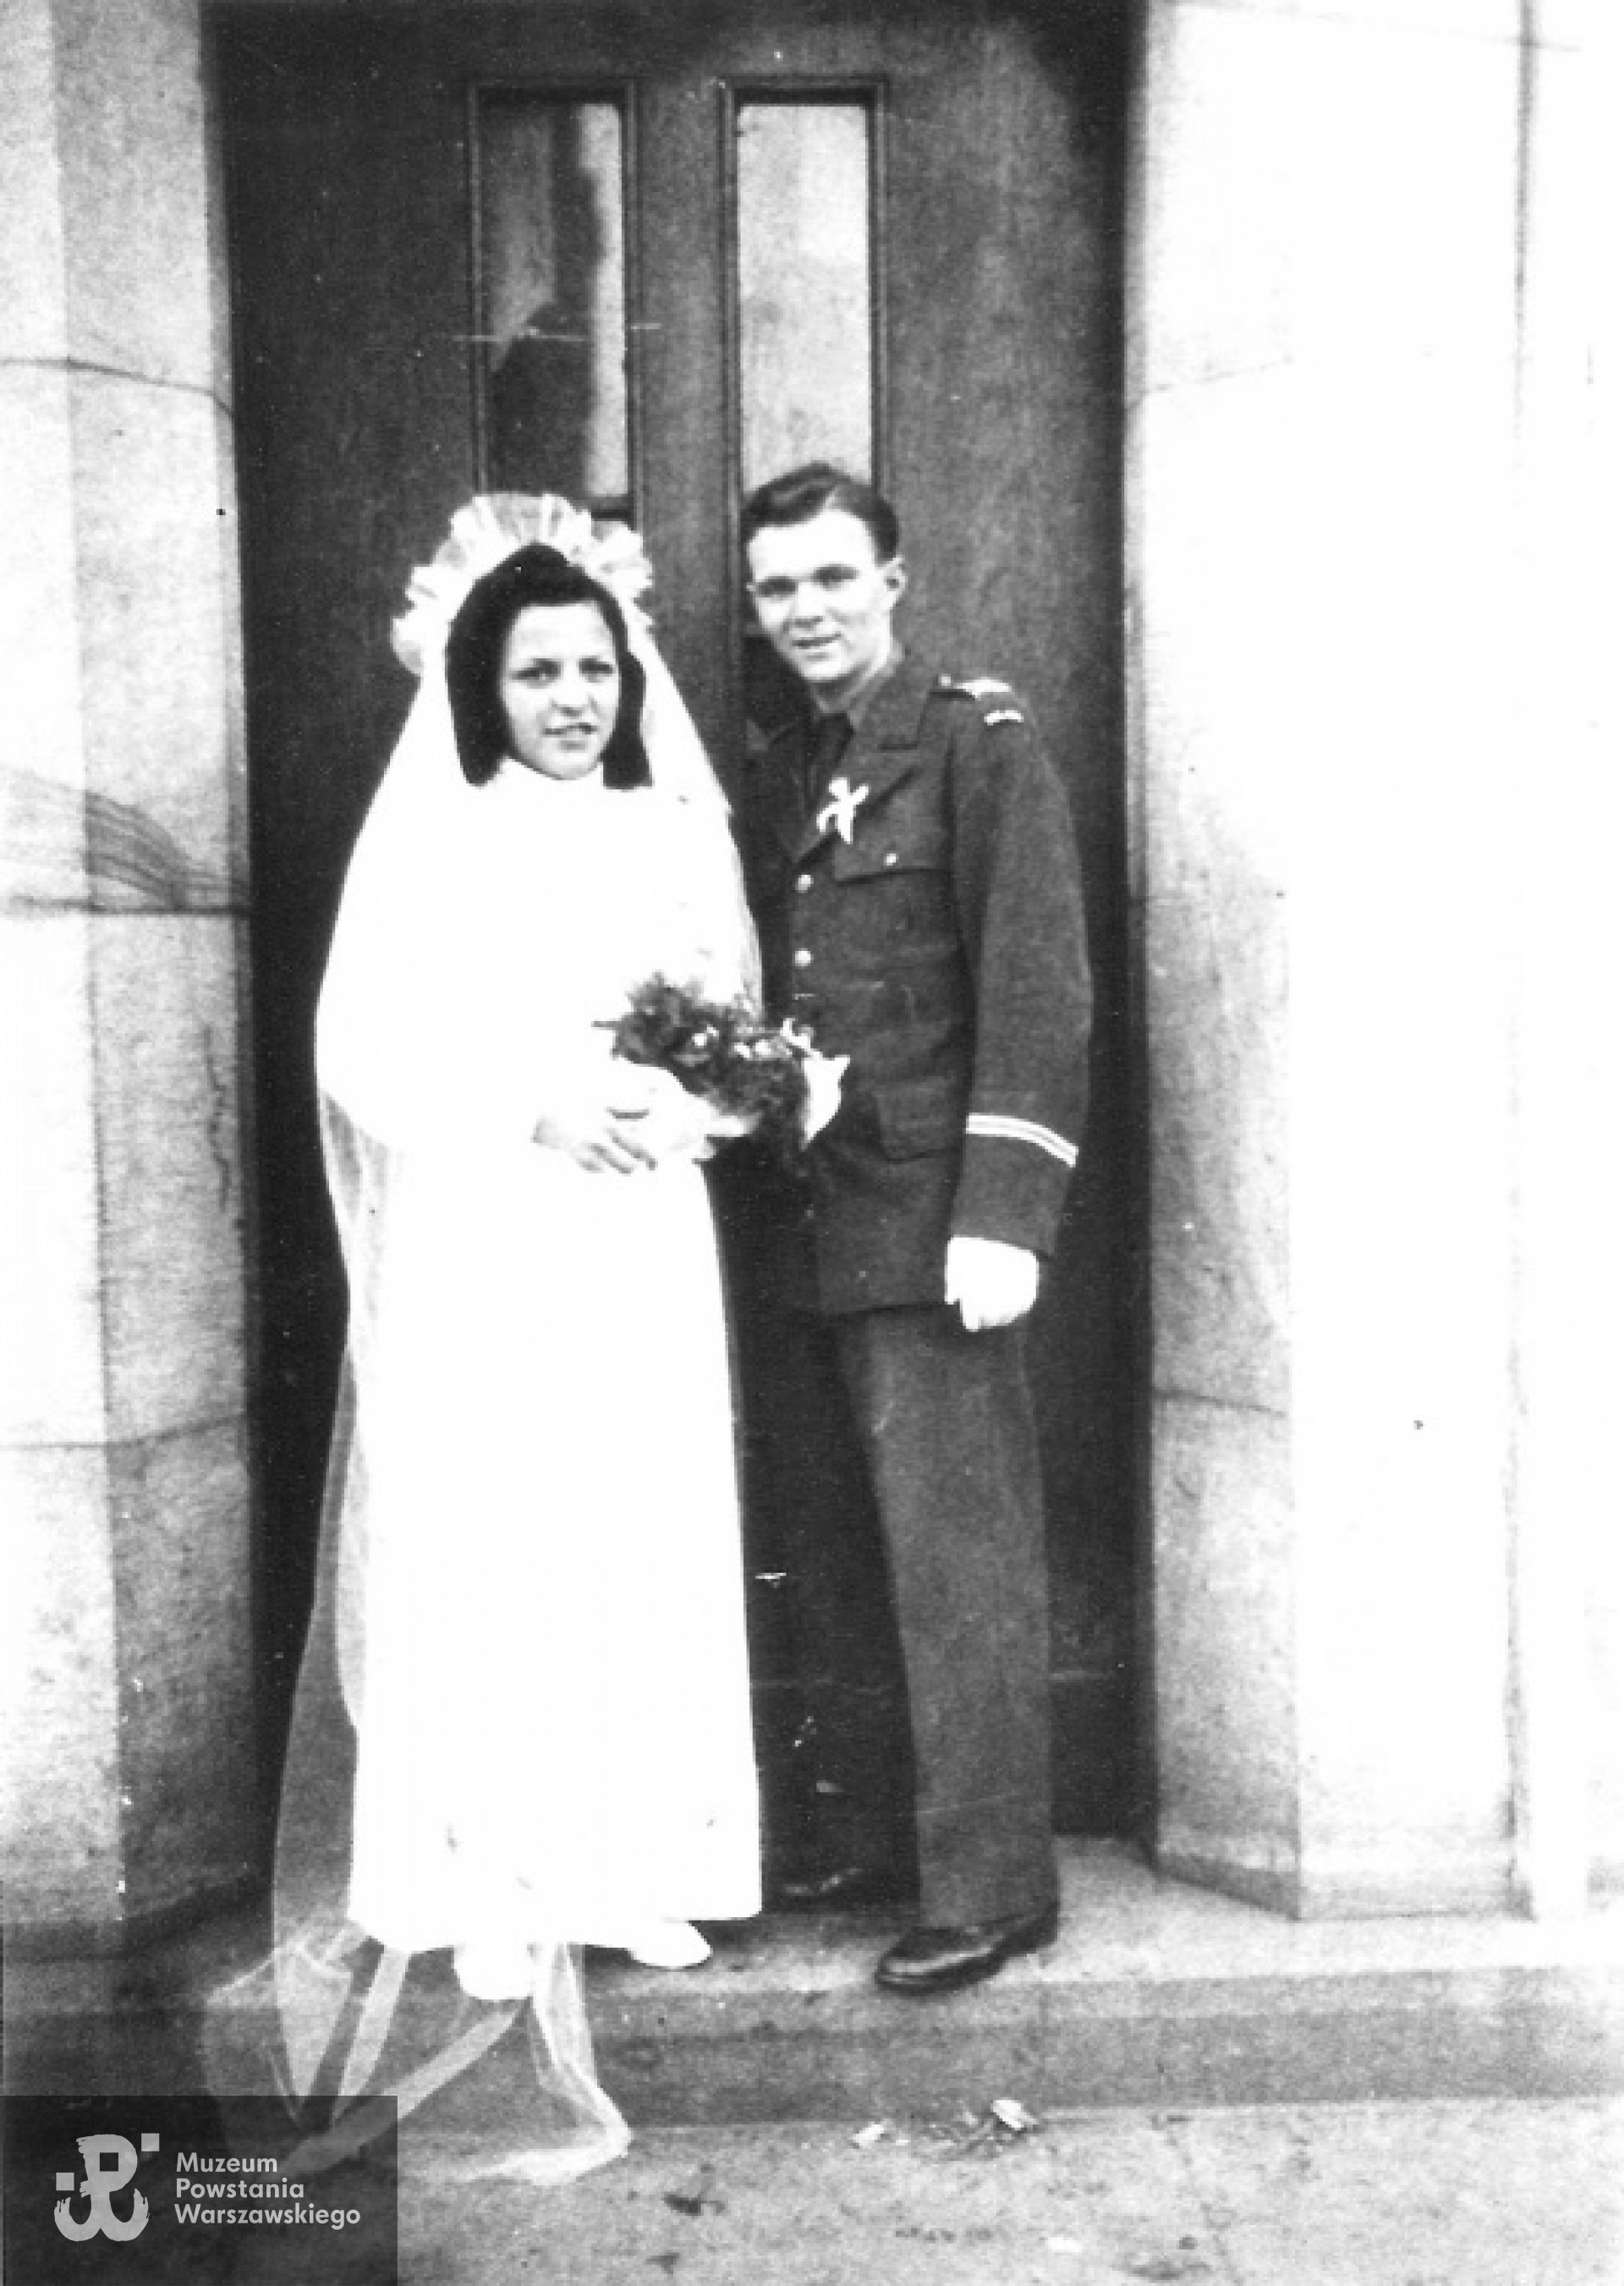 Ślub Janusza Kucia z Leokadią Streker zawarty w kaplicy obozowej Ośrodka Polskiego Okręgu Wojskowego w Hameln 26 grudnia 1945 r.